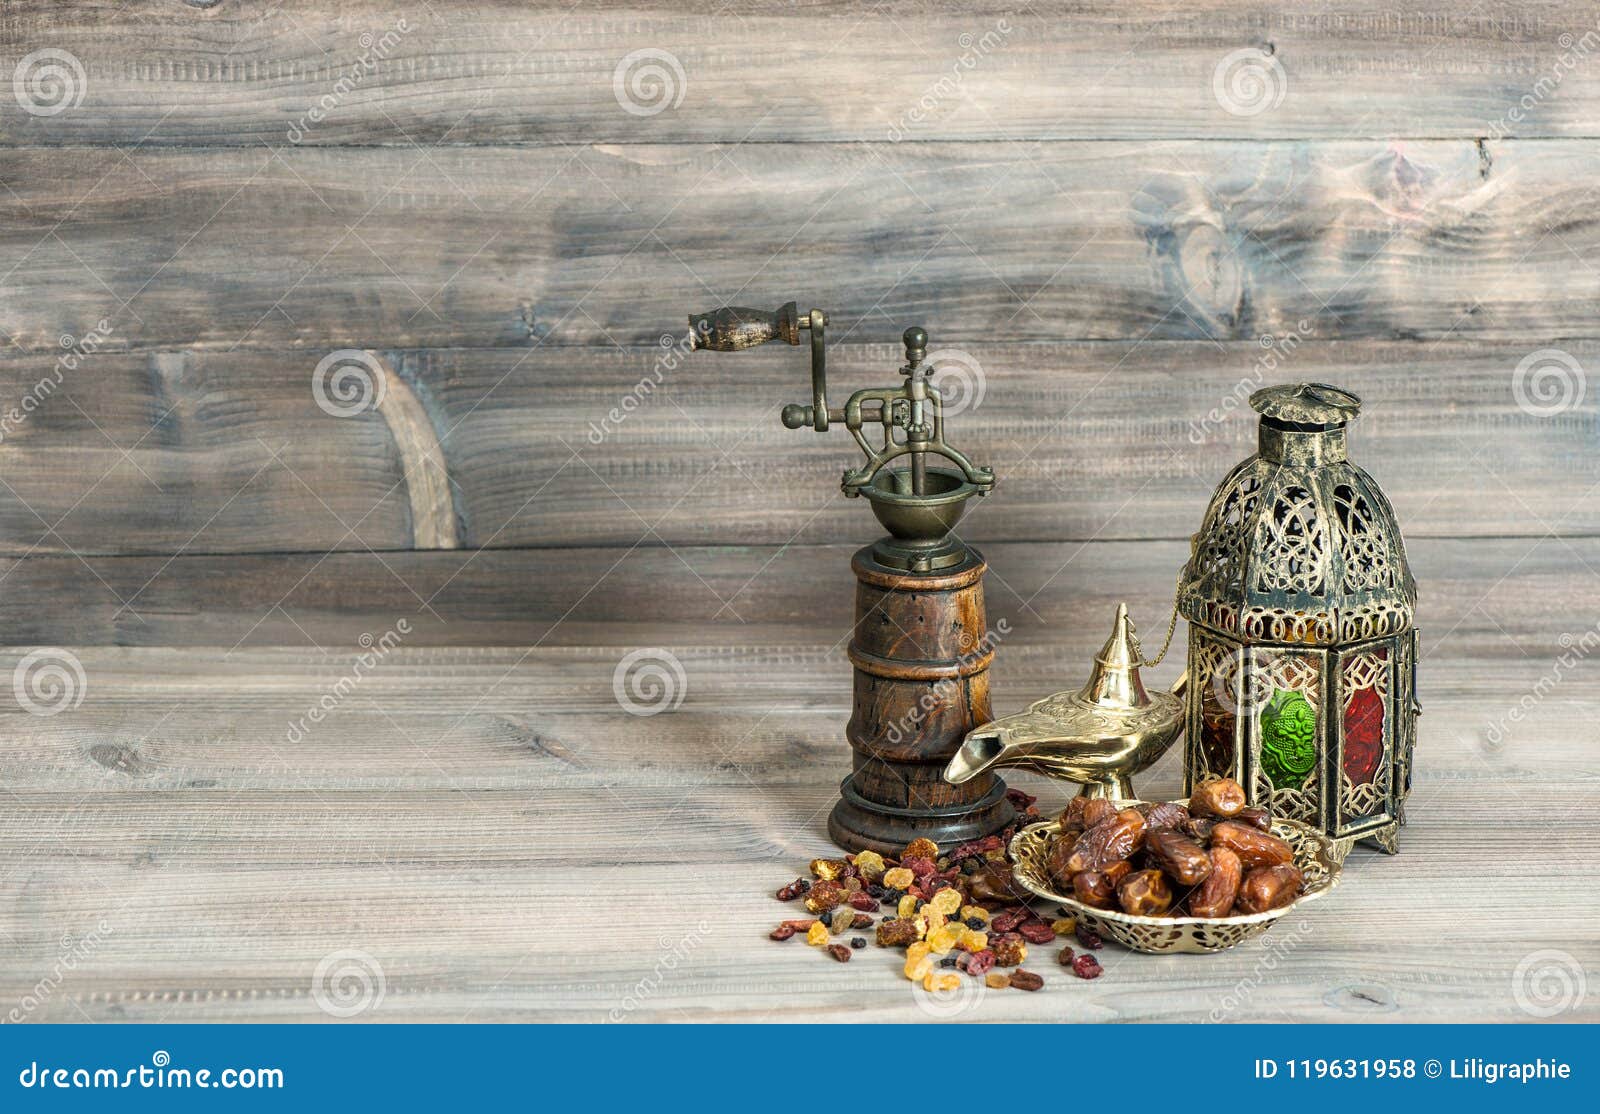 Ramadan lampe und daten auf holzuntergrund. orientalische laterne